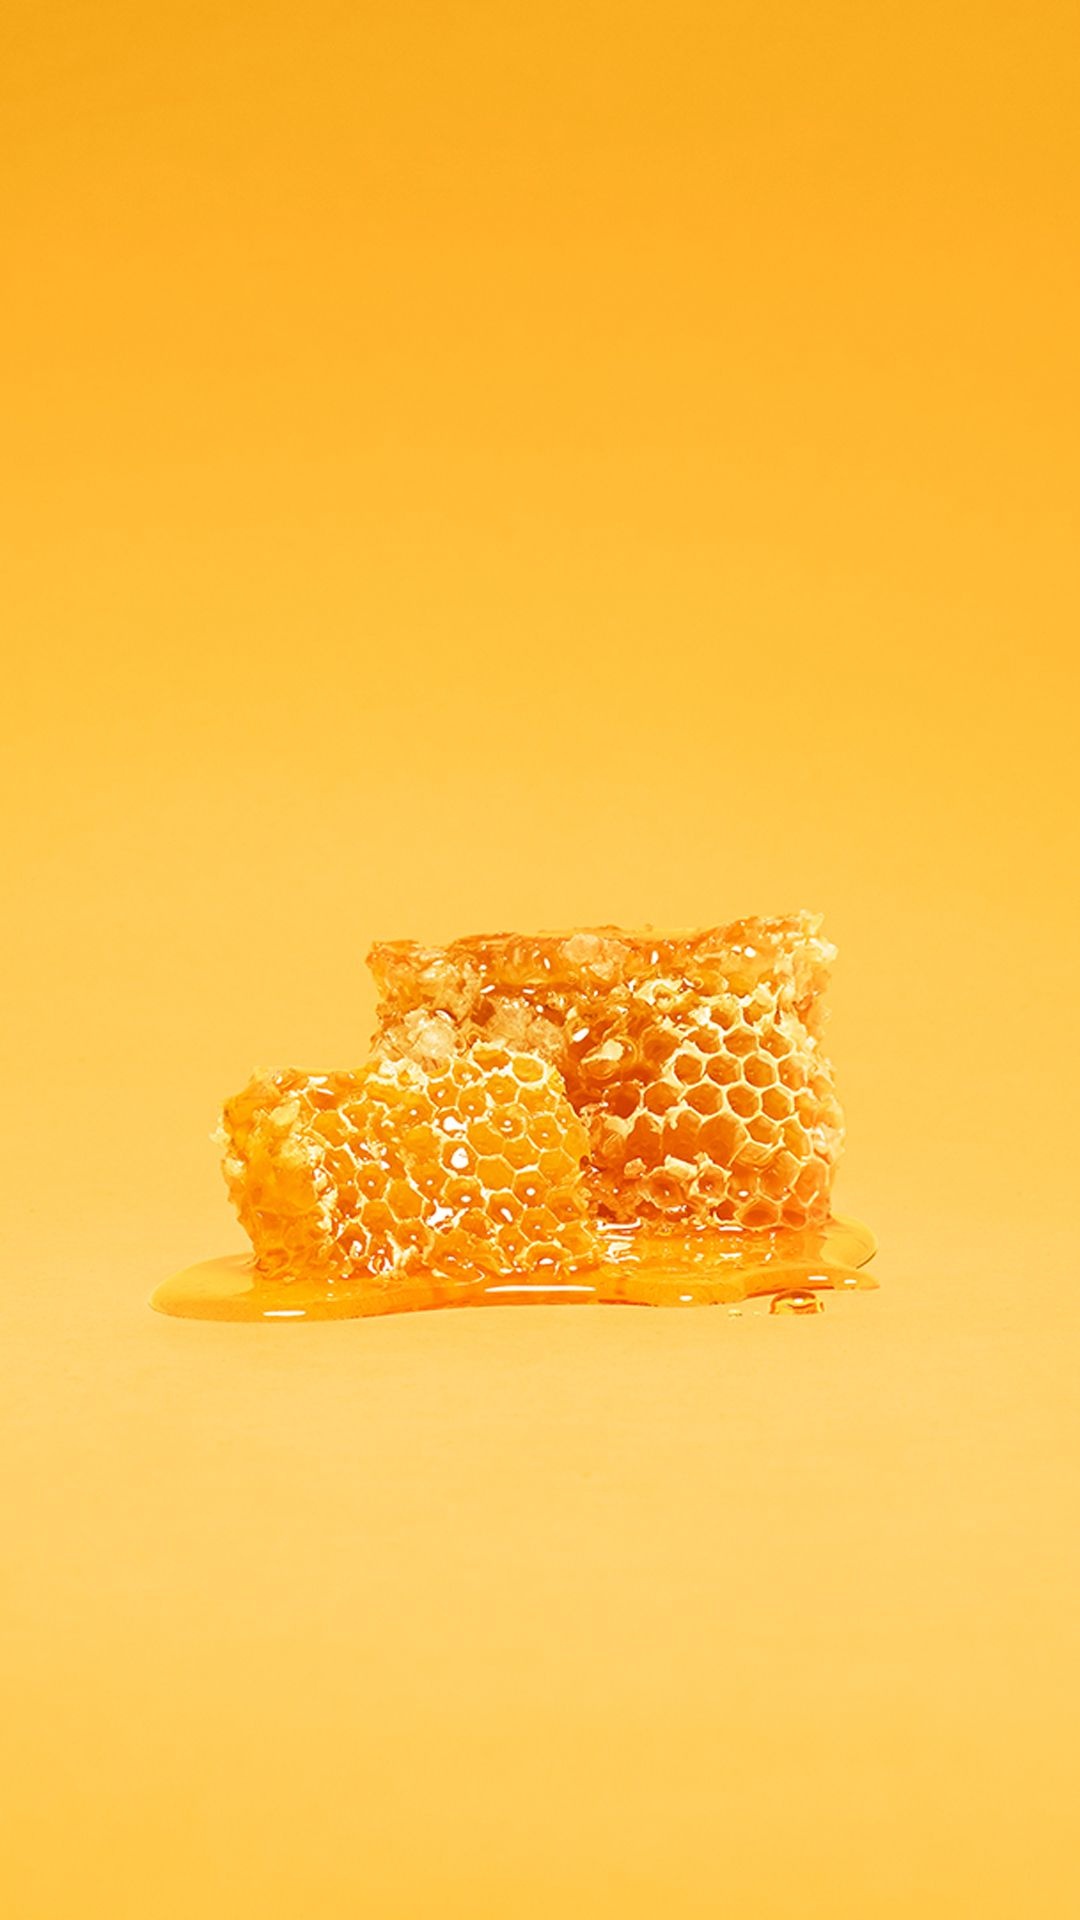 Honey: Sweet, viscous liquid food, dark golden in color. 1080x1920 Full HD Background.